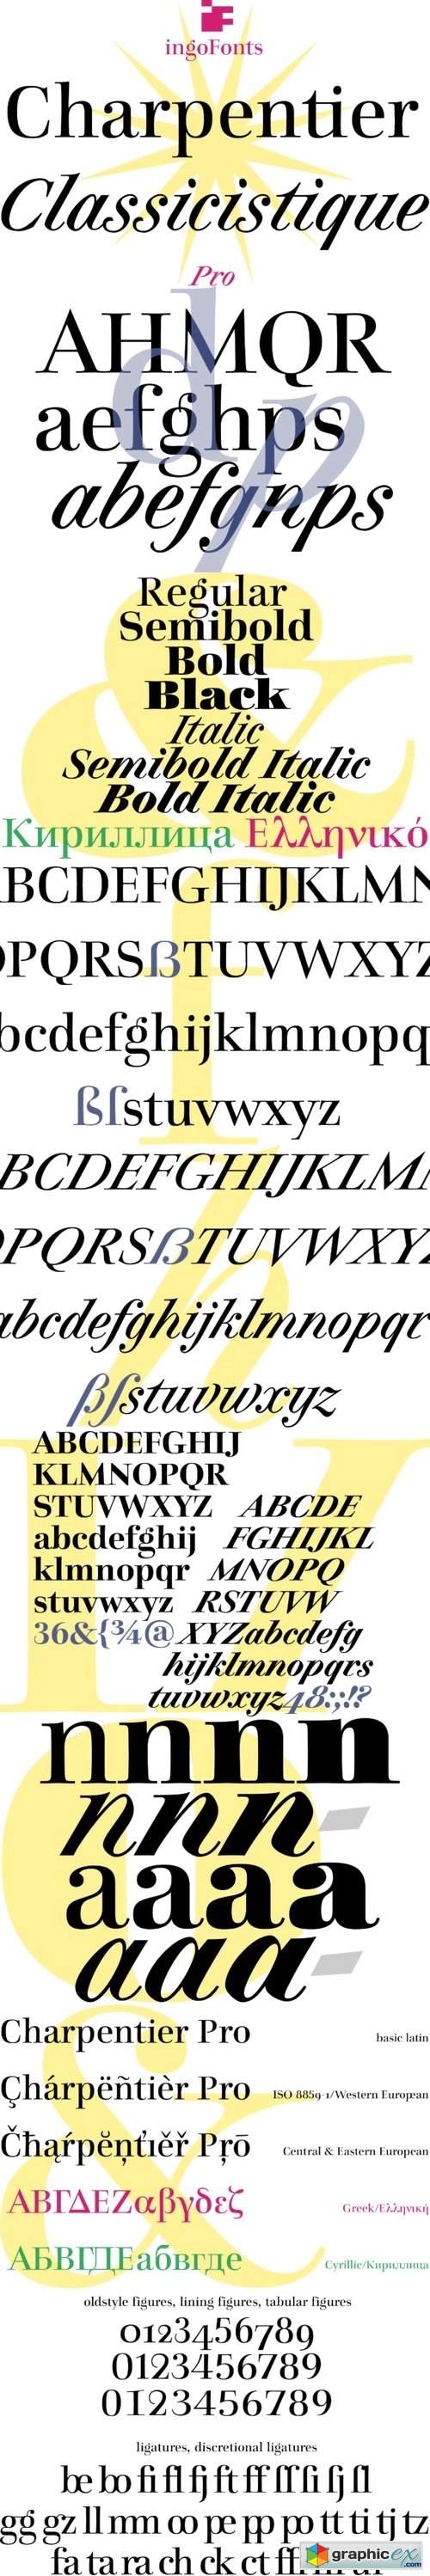 Charpentier Classicistique Pro Font